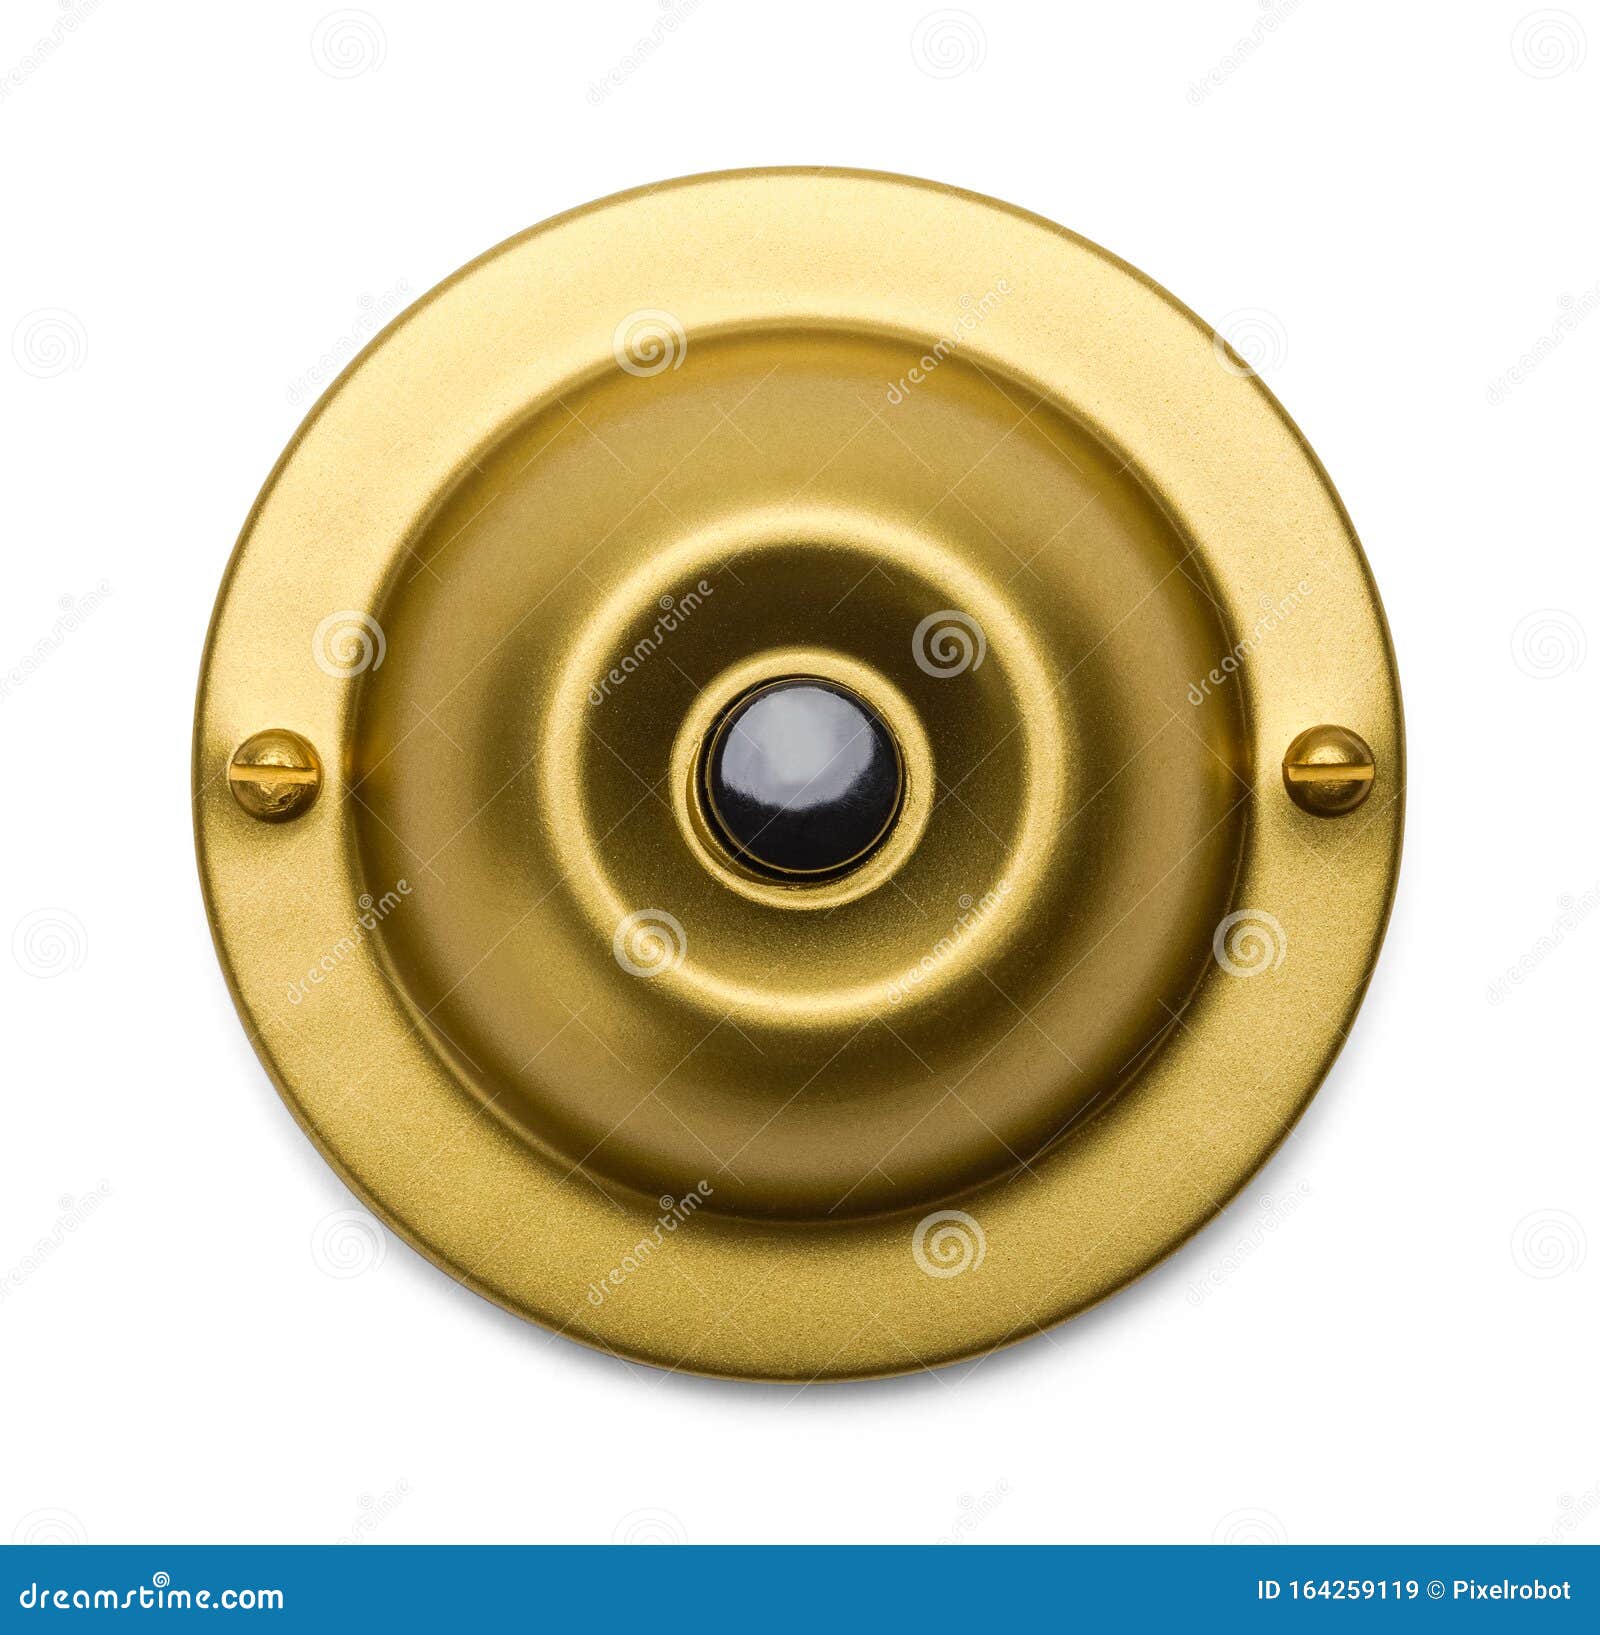 brass doorbell